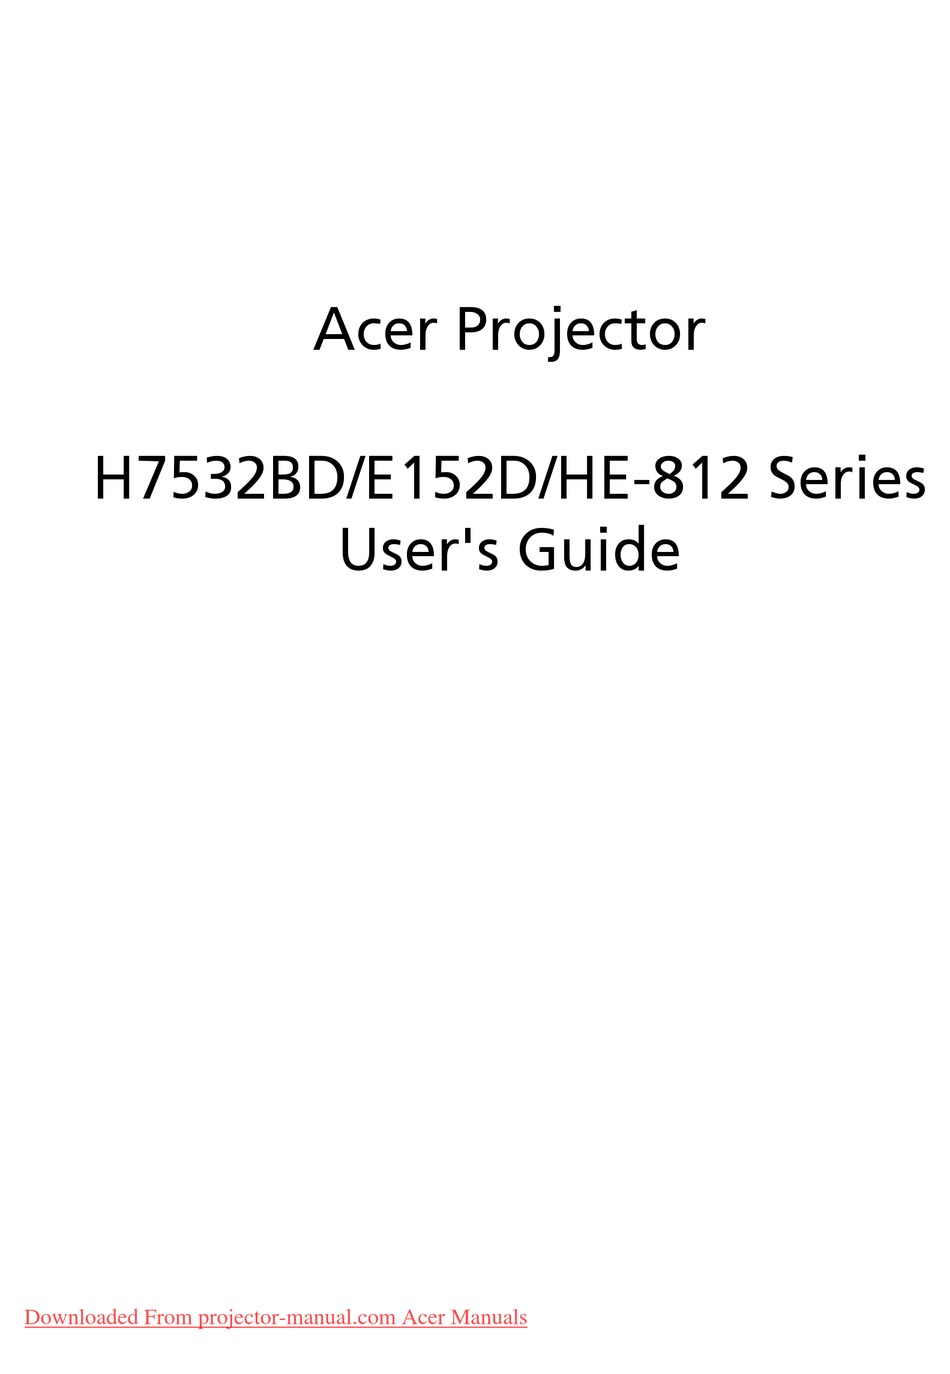 ACER H7532BD SERIES USER MANUAL Pdf Download | ManualsLib